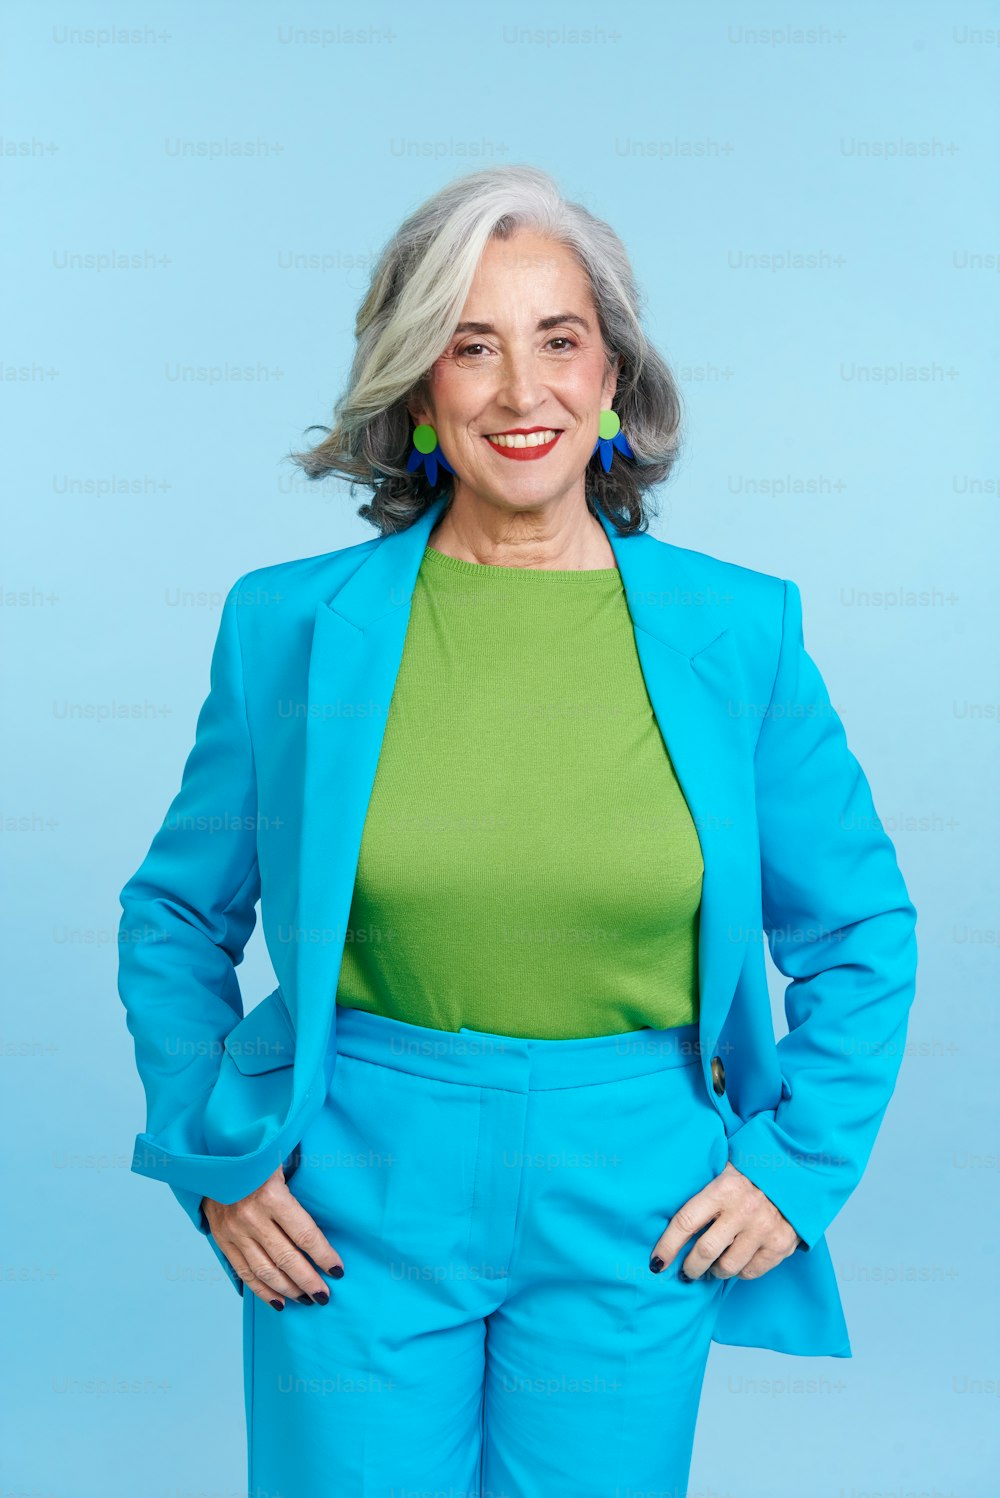 Una mujer con un traje azul posando para una foto